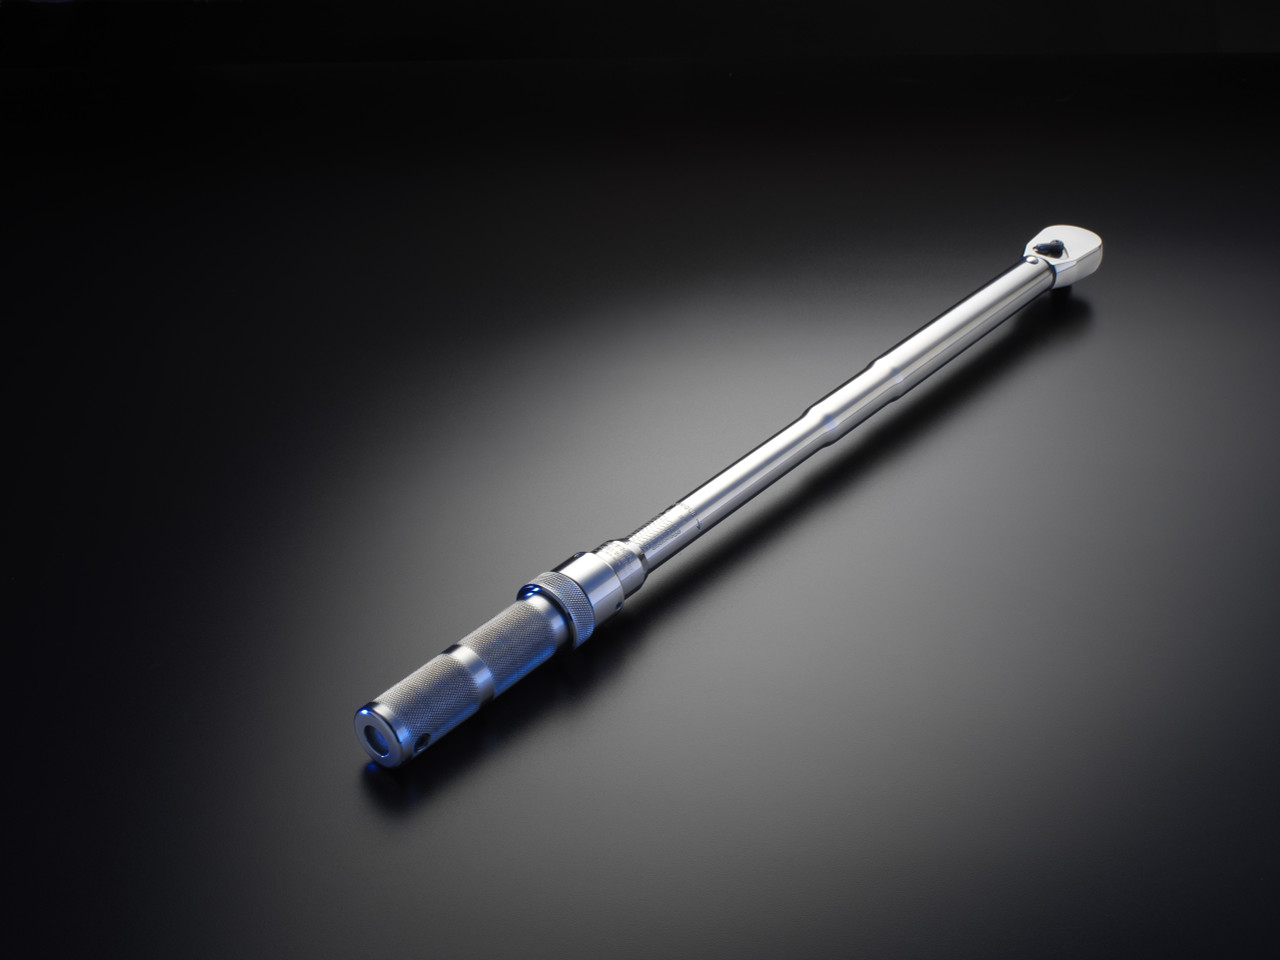 Precision Instruments 1/4 Drive Micrometer Click Wrench M1R200HX 